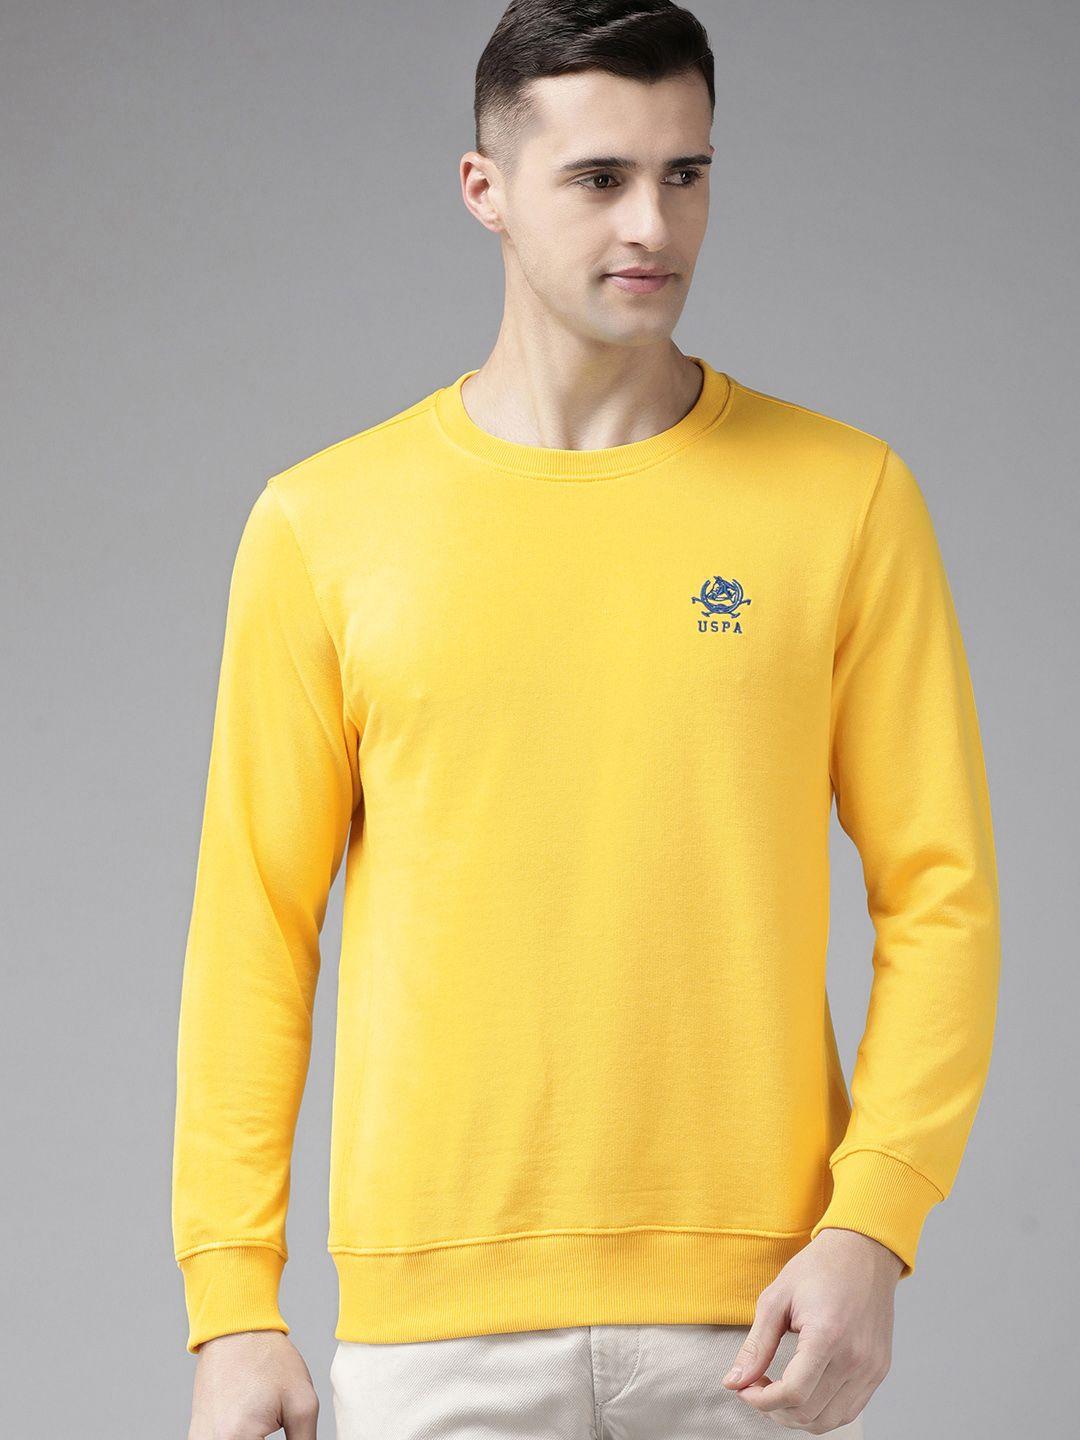 u.s. polo assn. men yellow sweatshirt